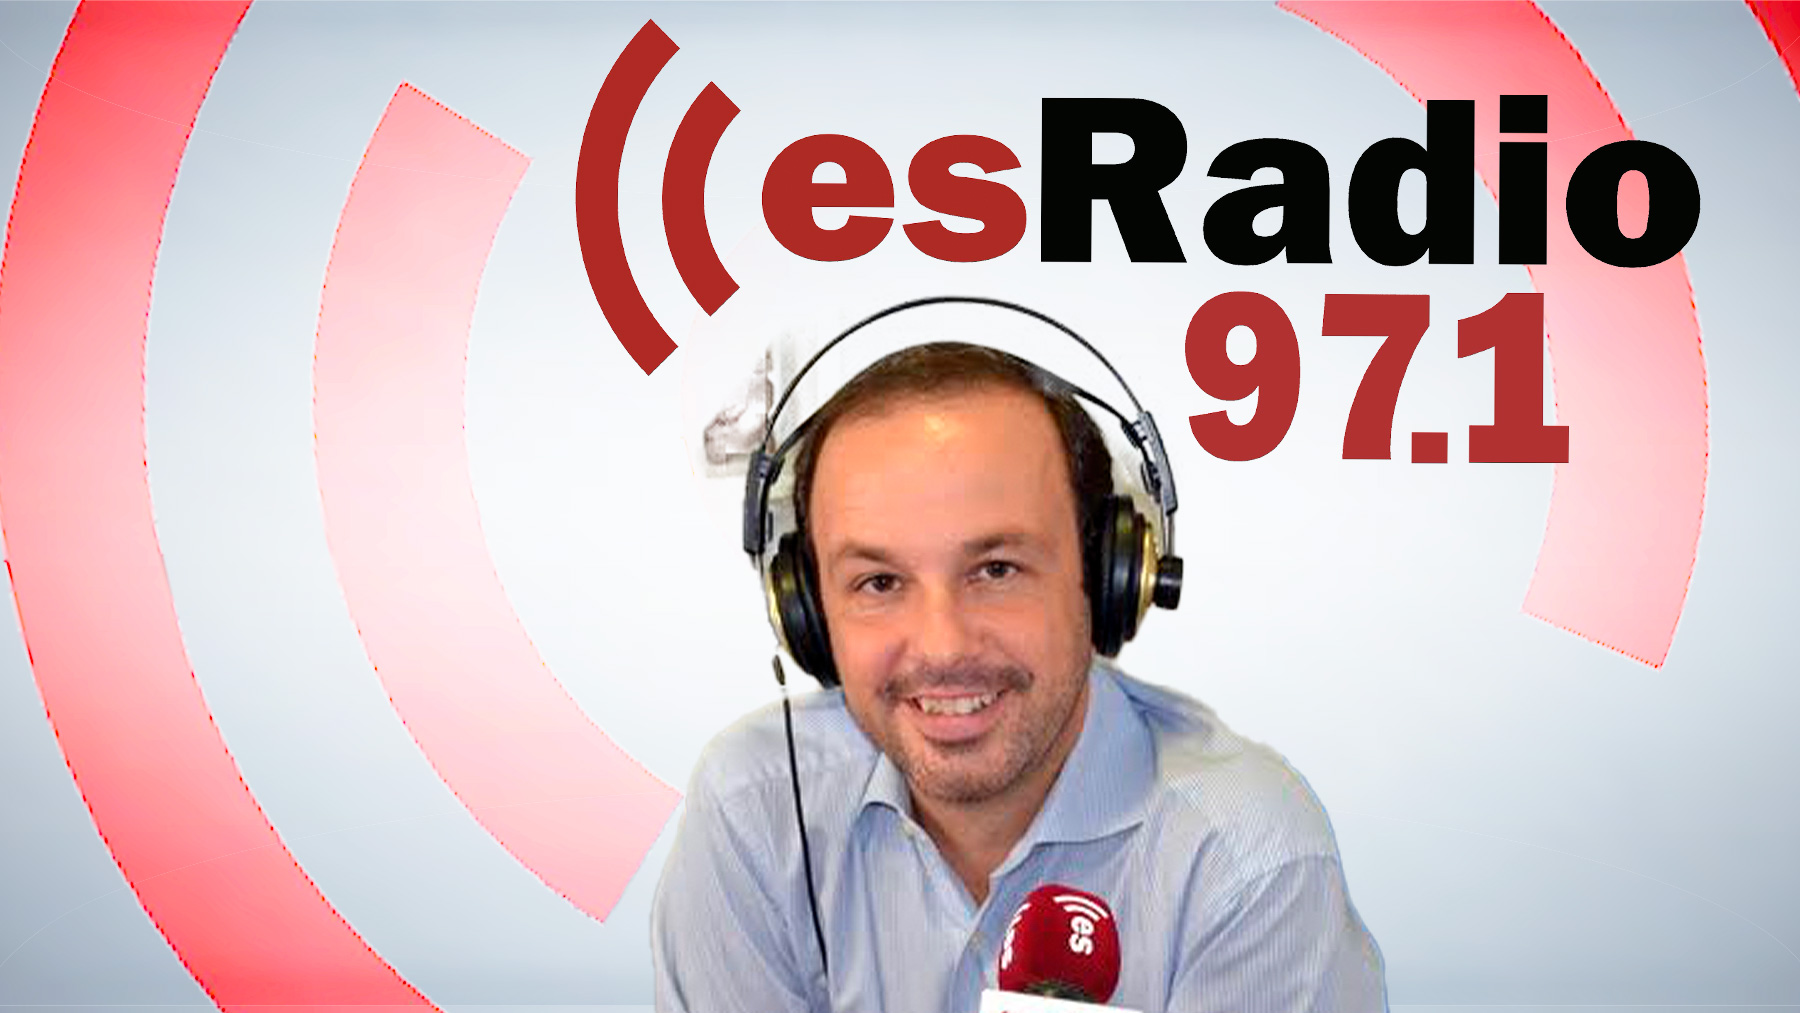 La Asociación contra el Cáncer y los nuevos espacios libres de humo en Mallorca, en esRadio97.1